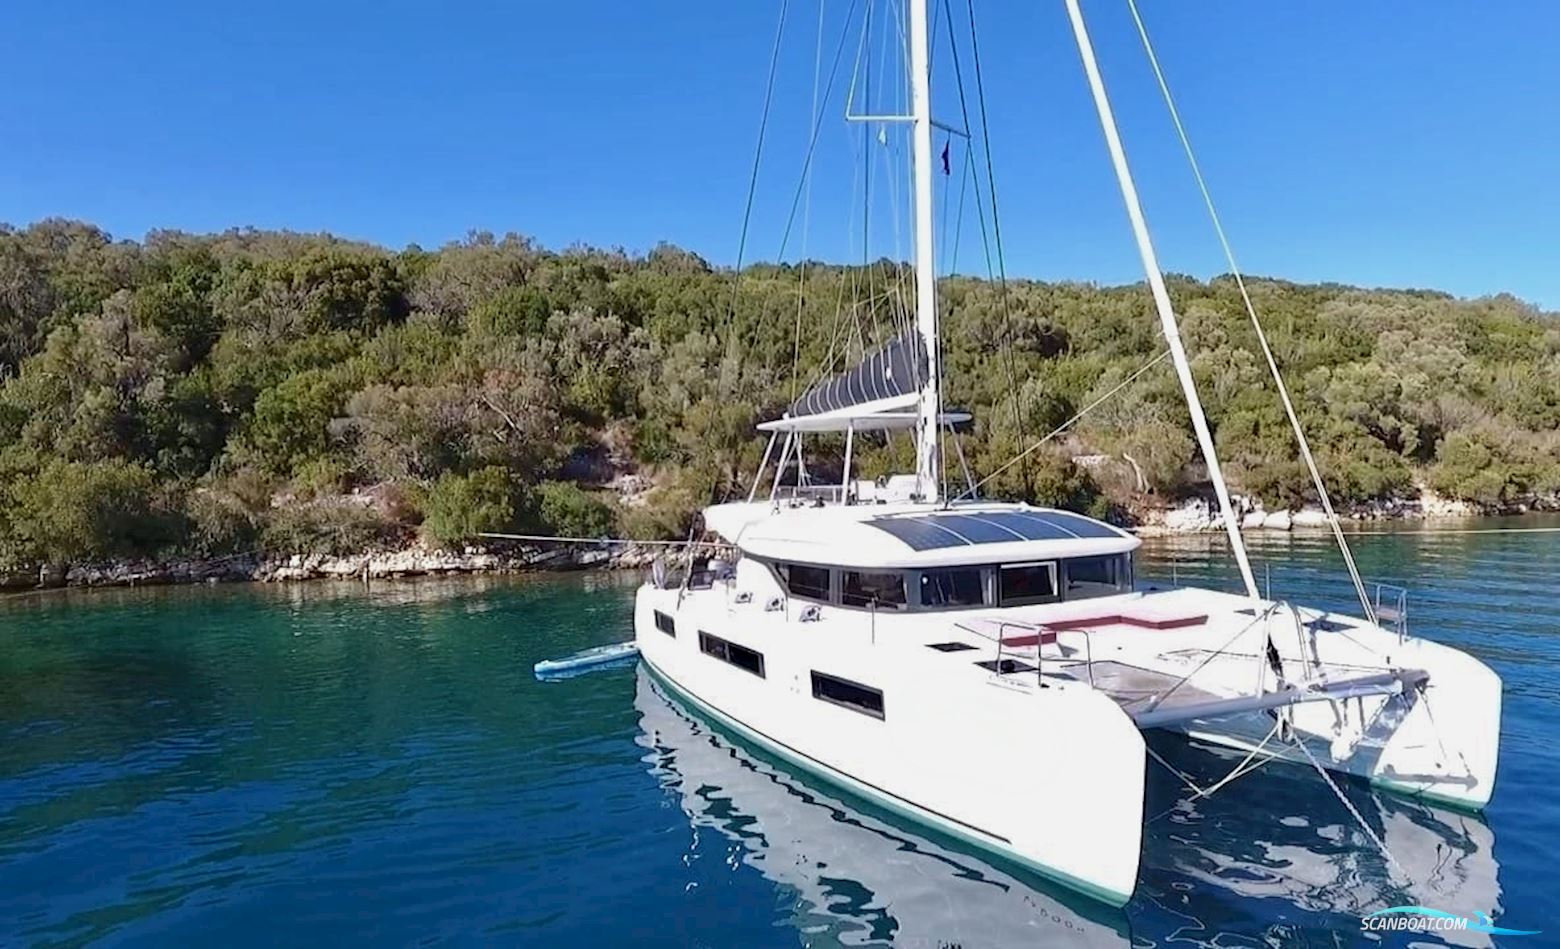 Lagoon LG 50 Flerskrogsbåd 2019, med Yanmar 4JH80 motor, Grækenland